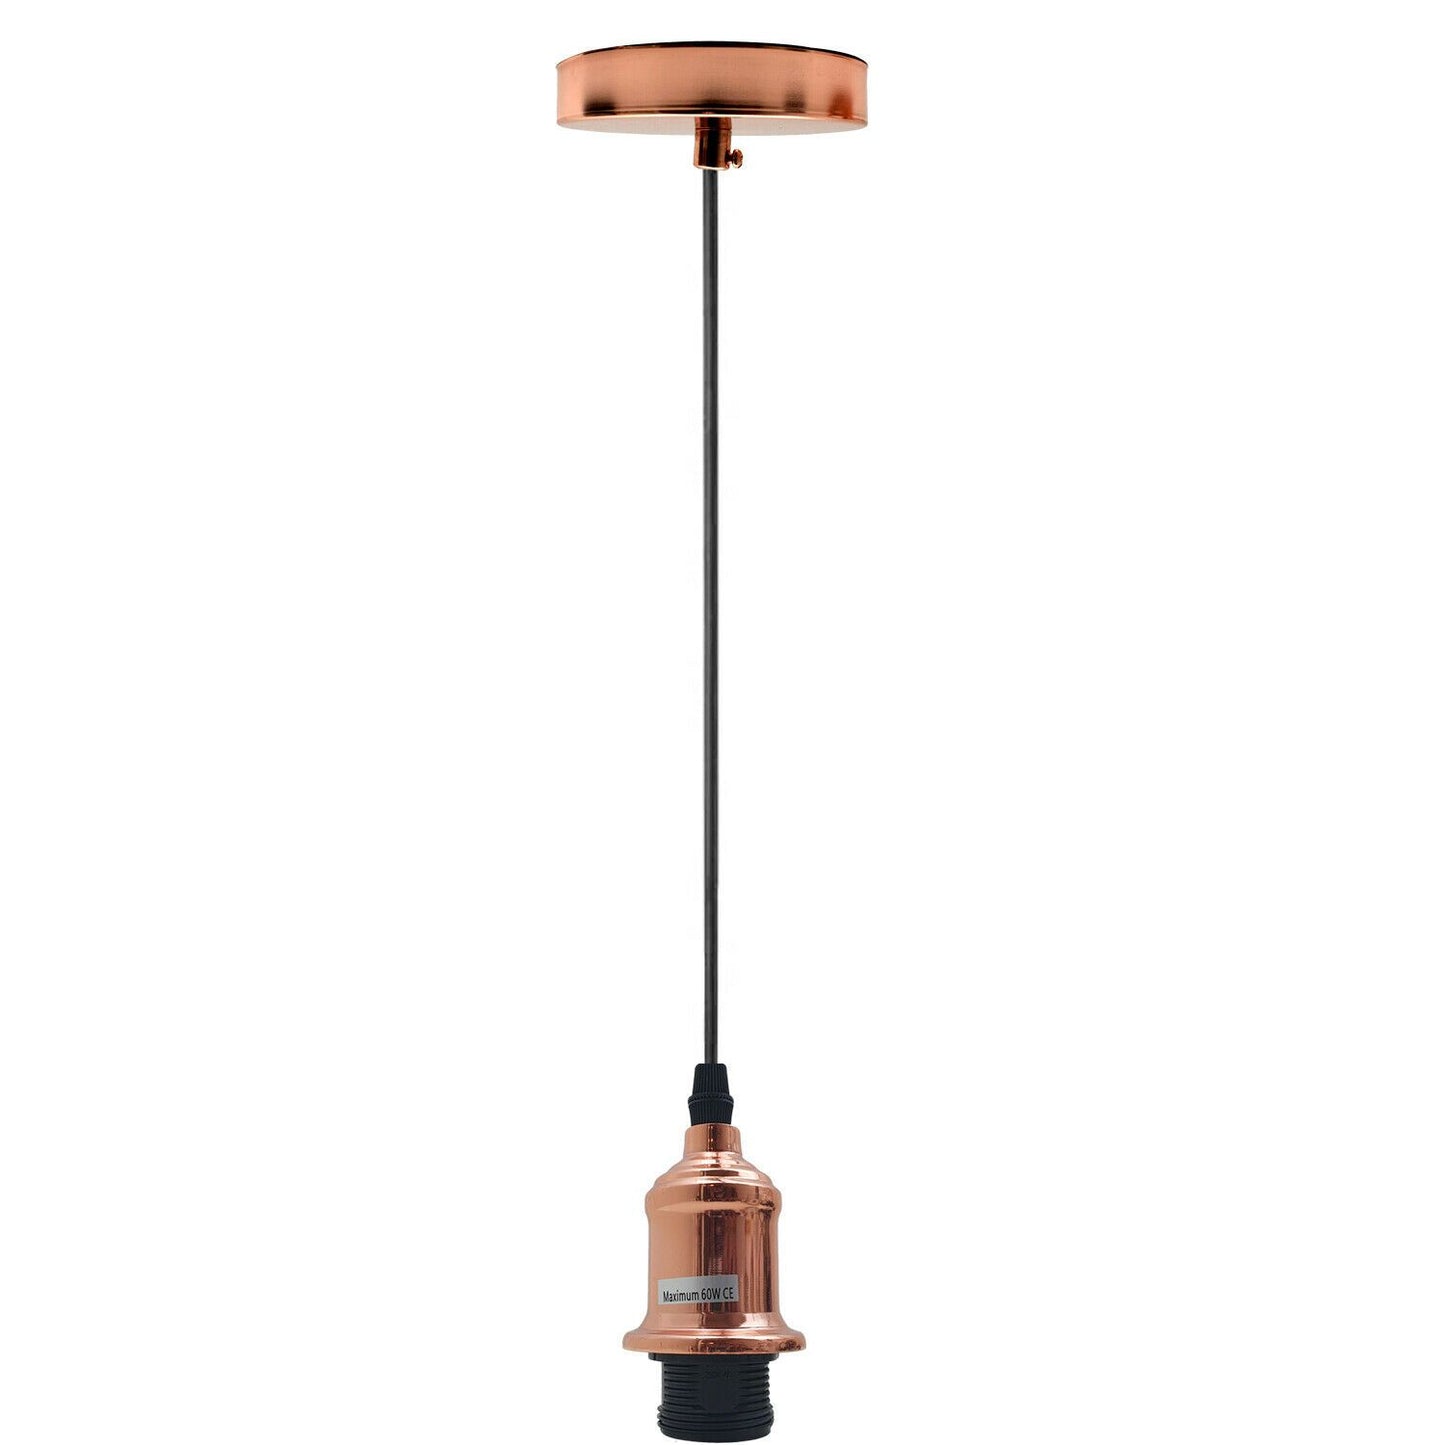 New E27 Ceiling Rose Light Fitting Vintage Industrial Pendant Lamp Bulb Holder~1691